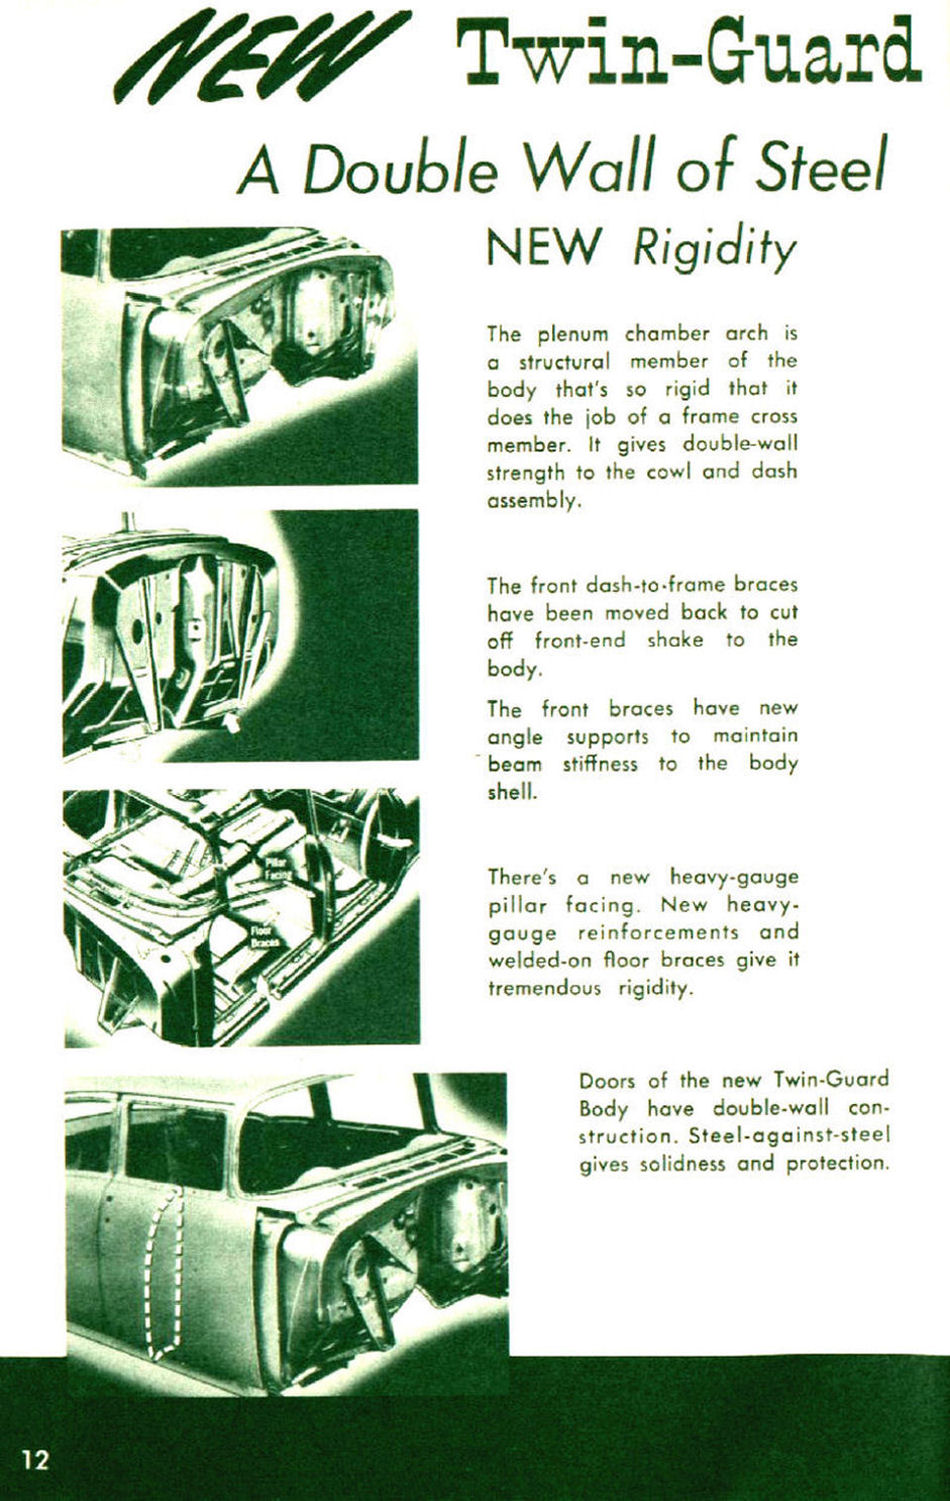 1955_Chevrolet_Third_Era_Booklet-12